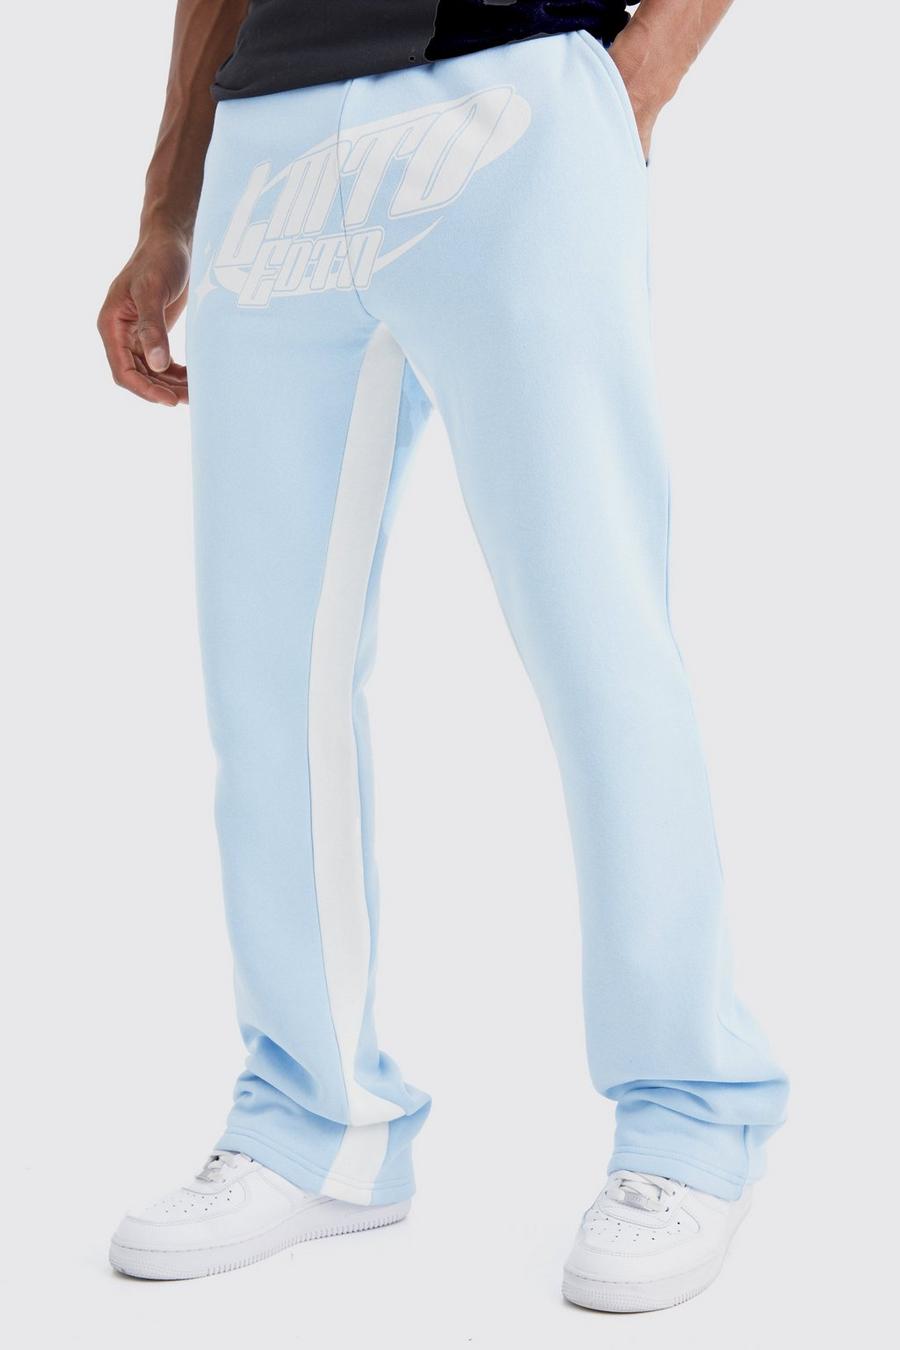 Pantaloni tuta Limited Edition con inserti e pieghe sul fondo, Light blue